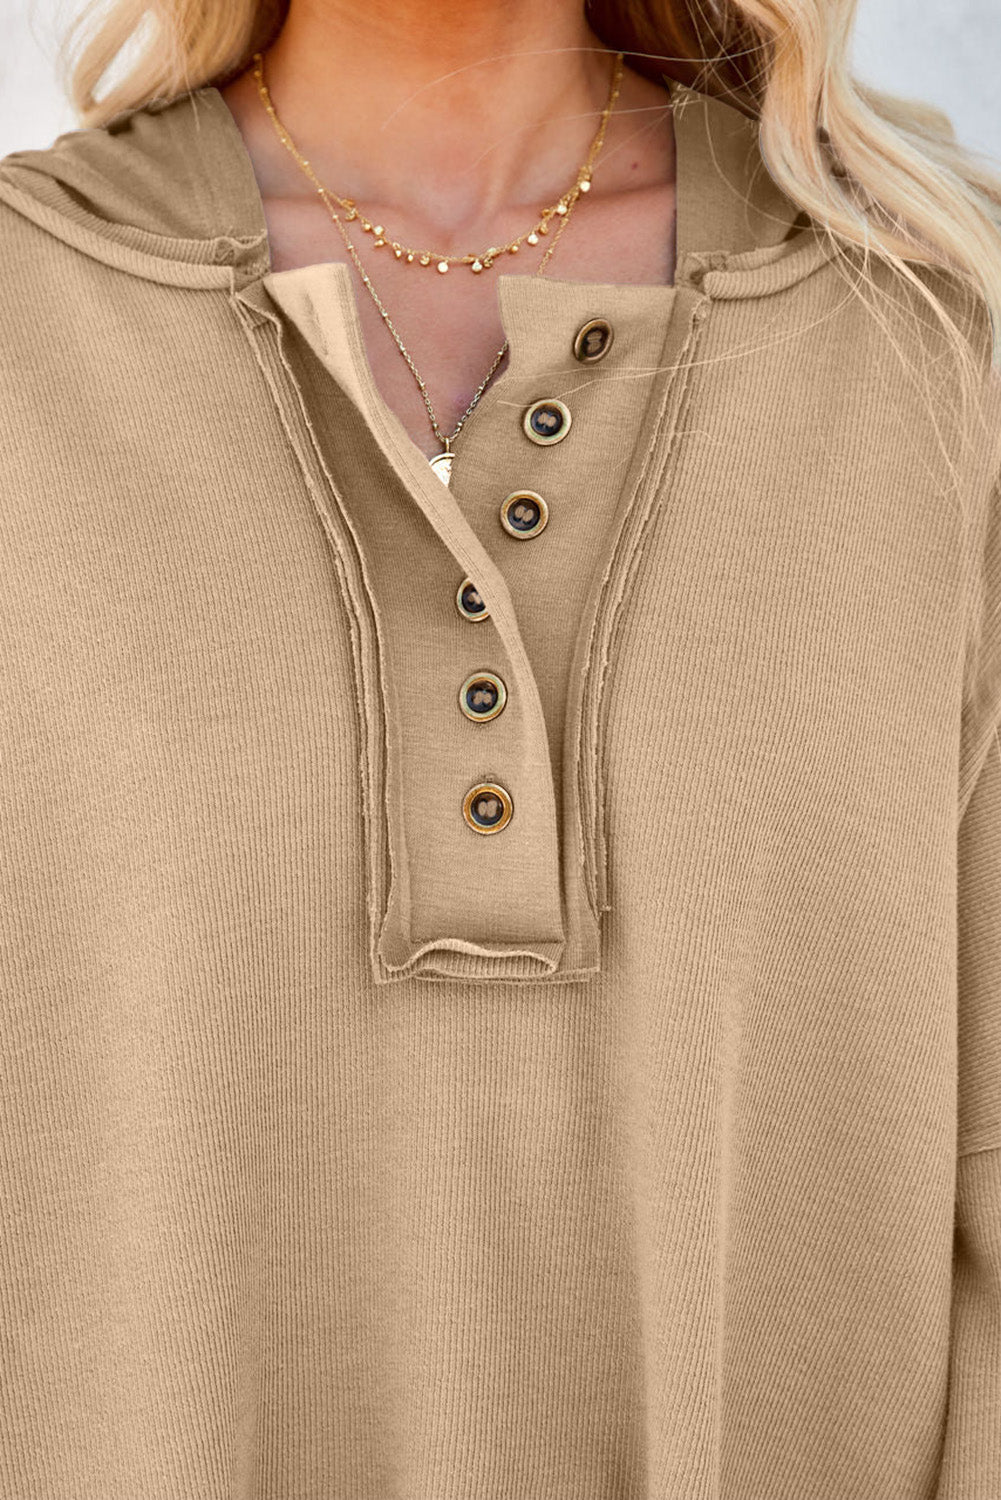 Roza pulover s kapuco z enobarvnimi krpankami in gumbi